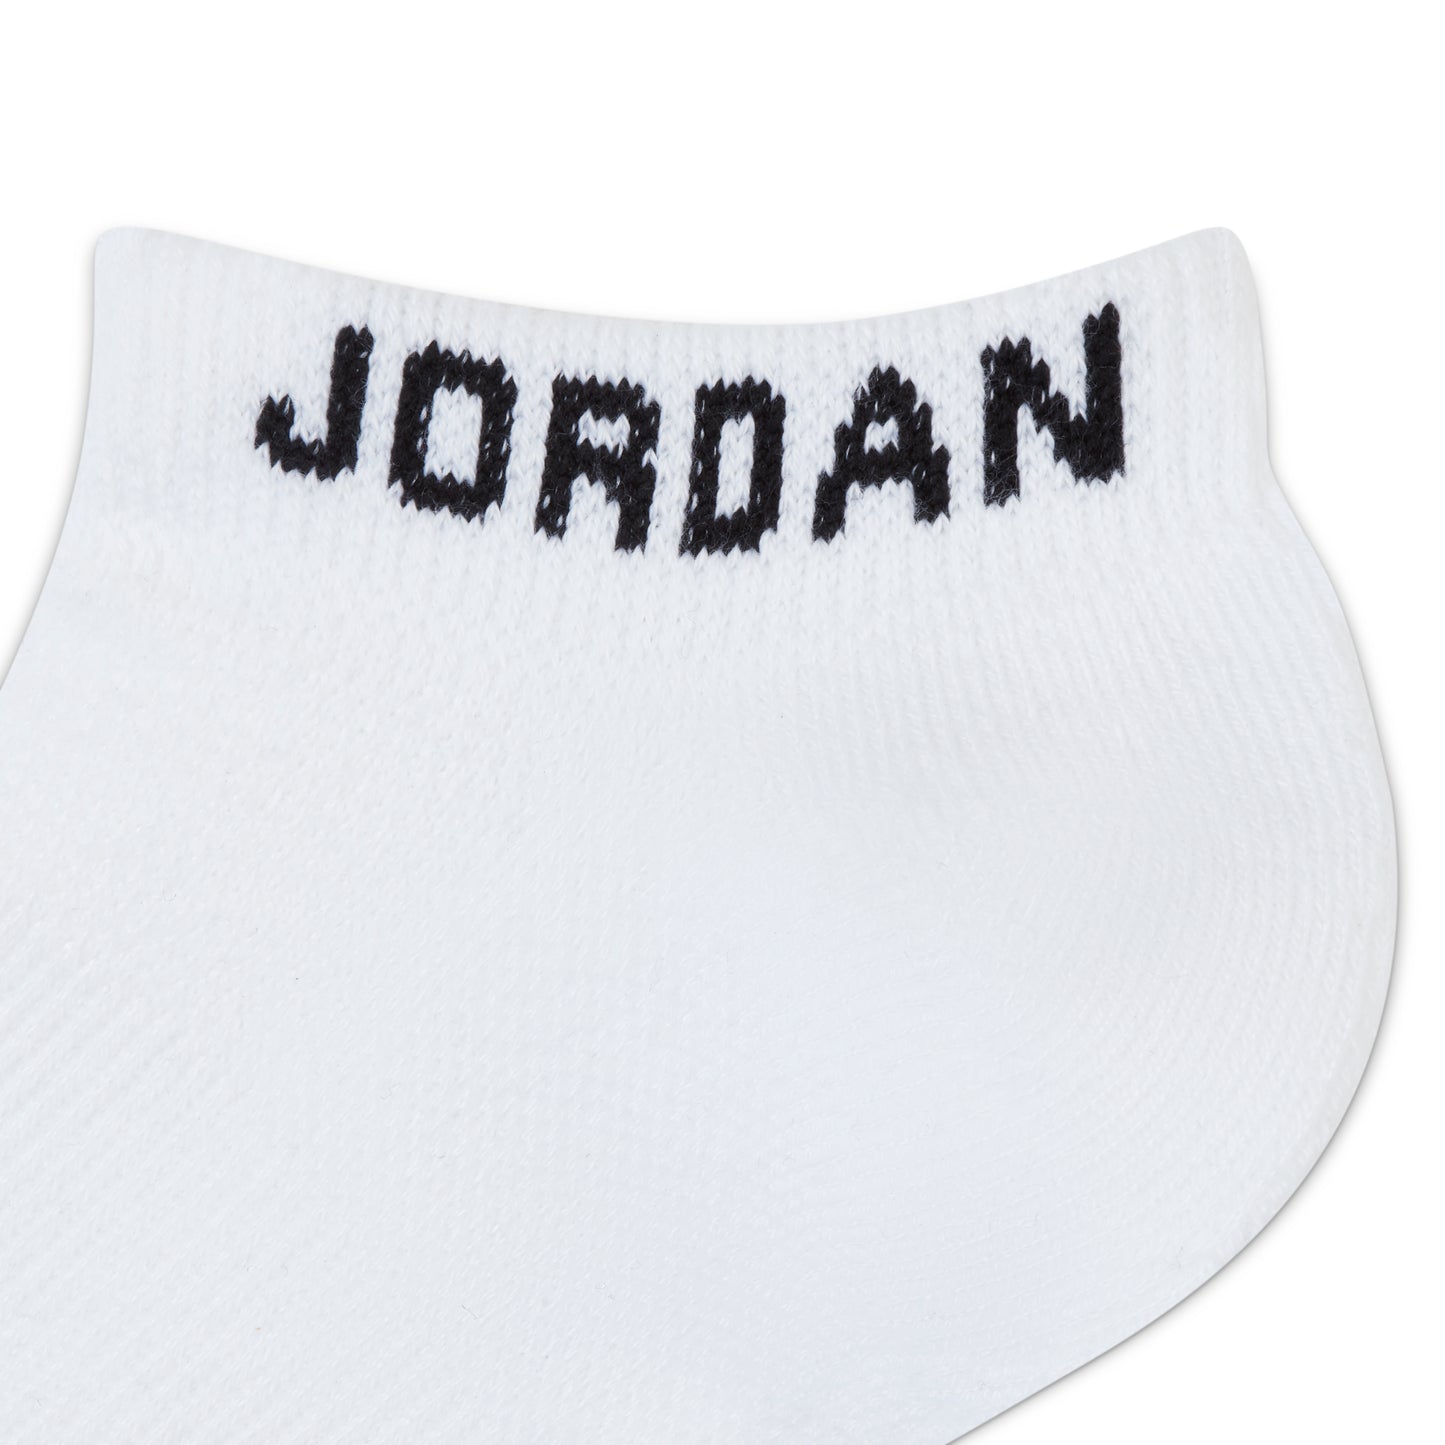 Jordan Everyday Max Socks White 3 Pack